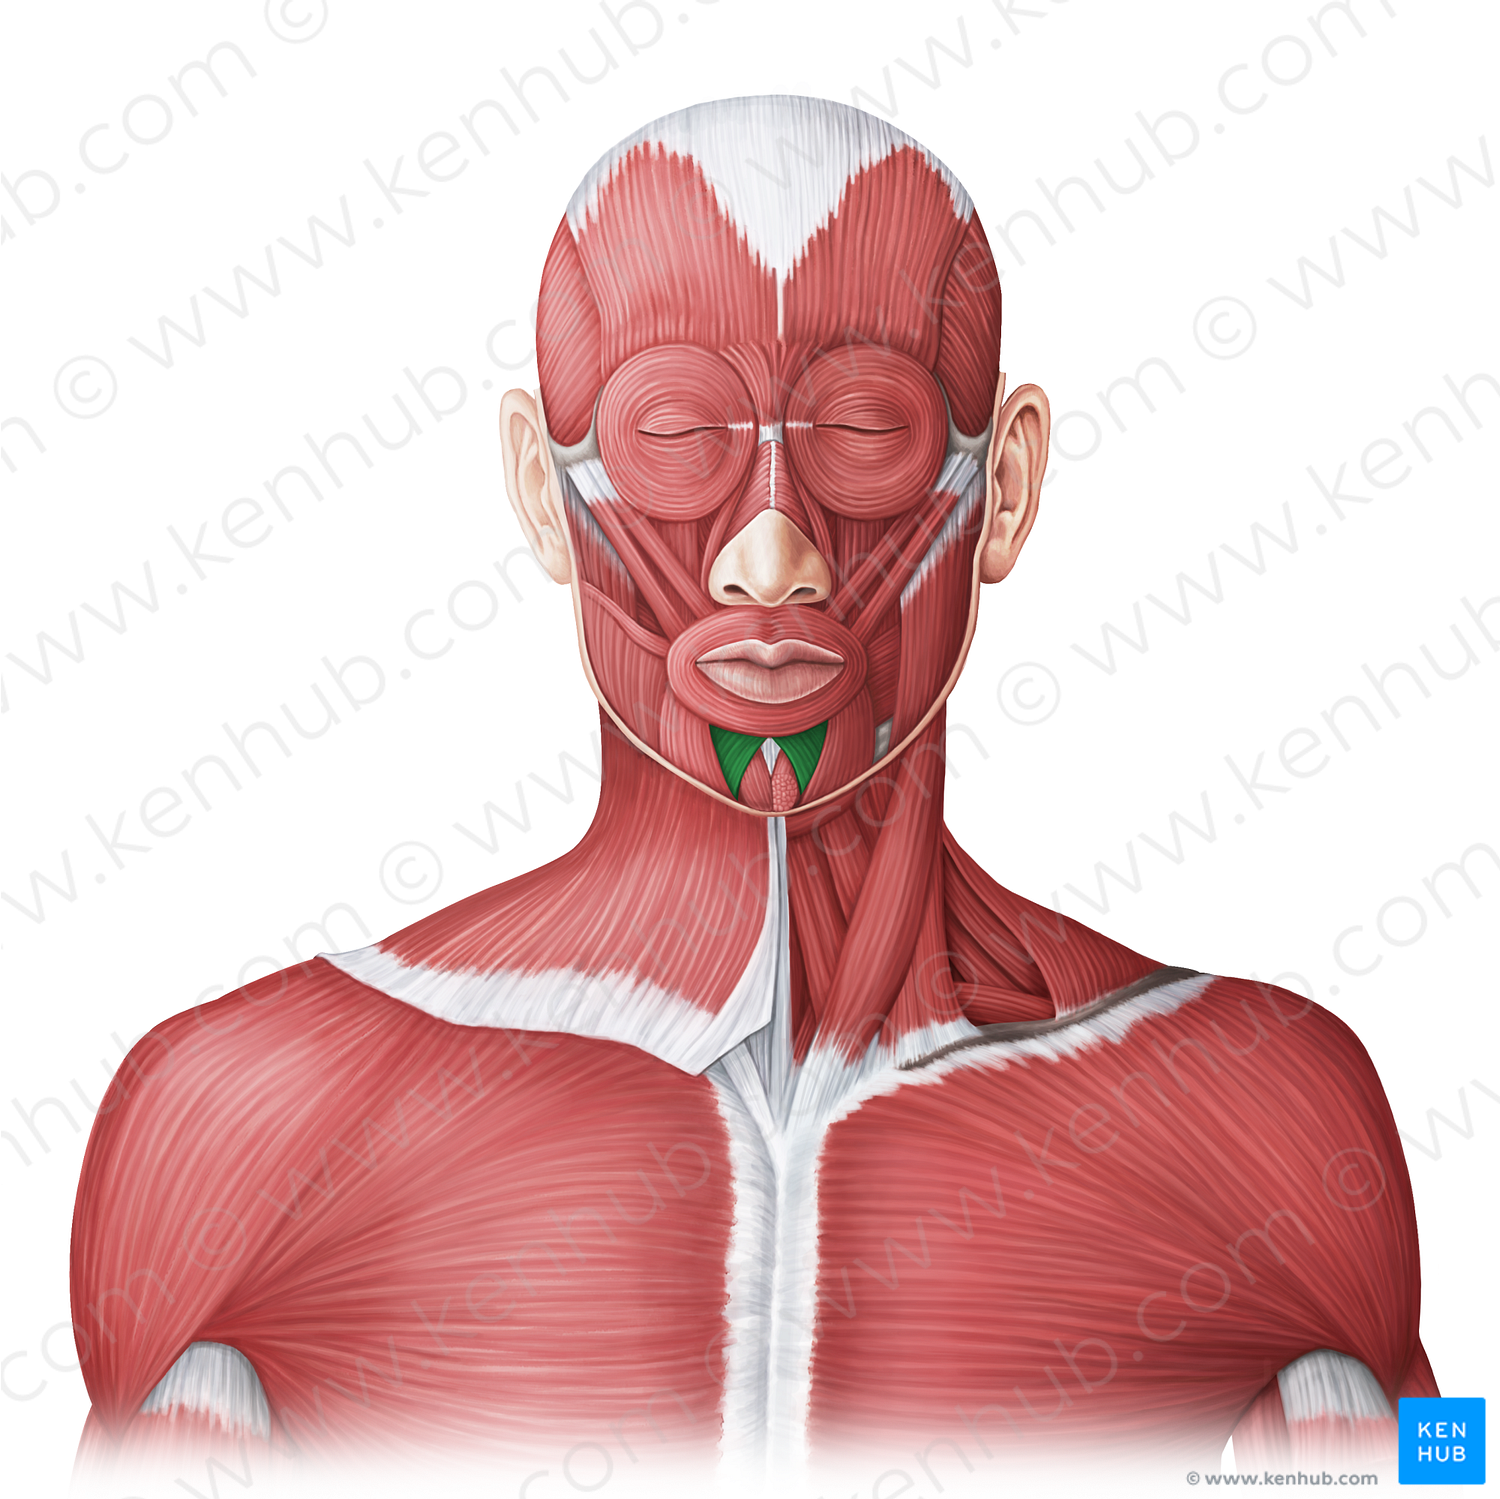 Depressor labii inferioris muscle (#20019)